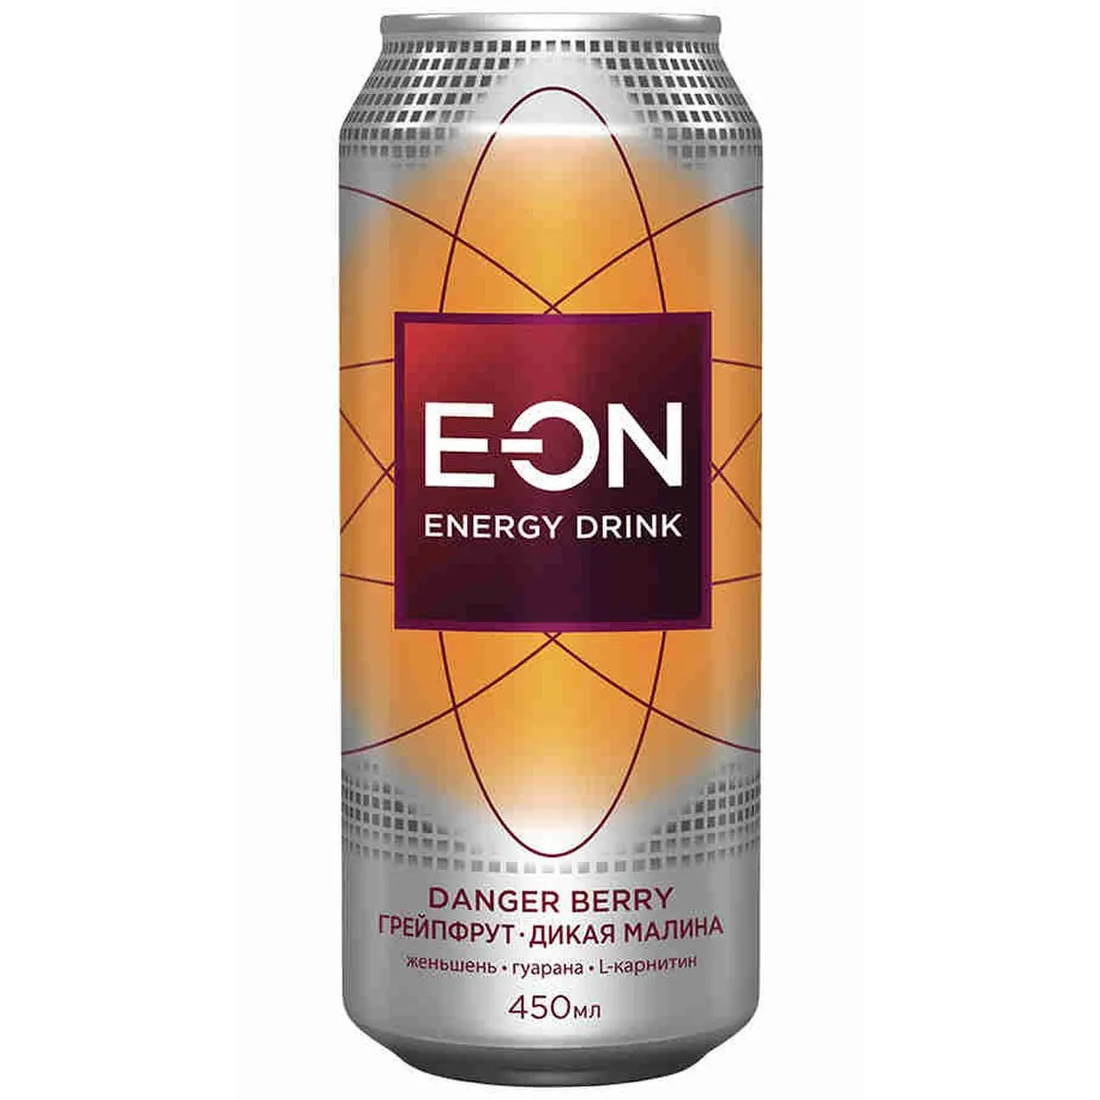 Напиток энергетический E-On Danger Berry, 0,45 мл напиток волчок cola 0 33 литра газ ж б 24 шт в уп